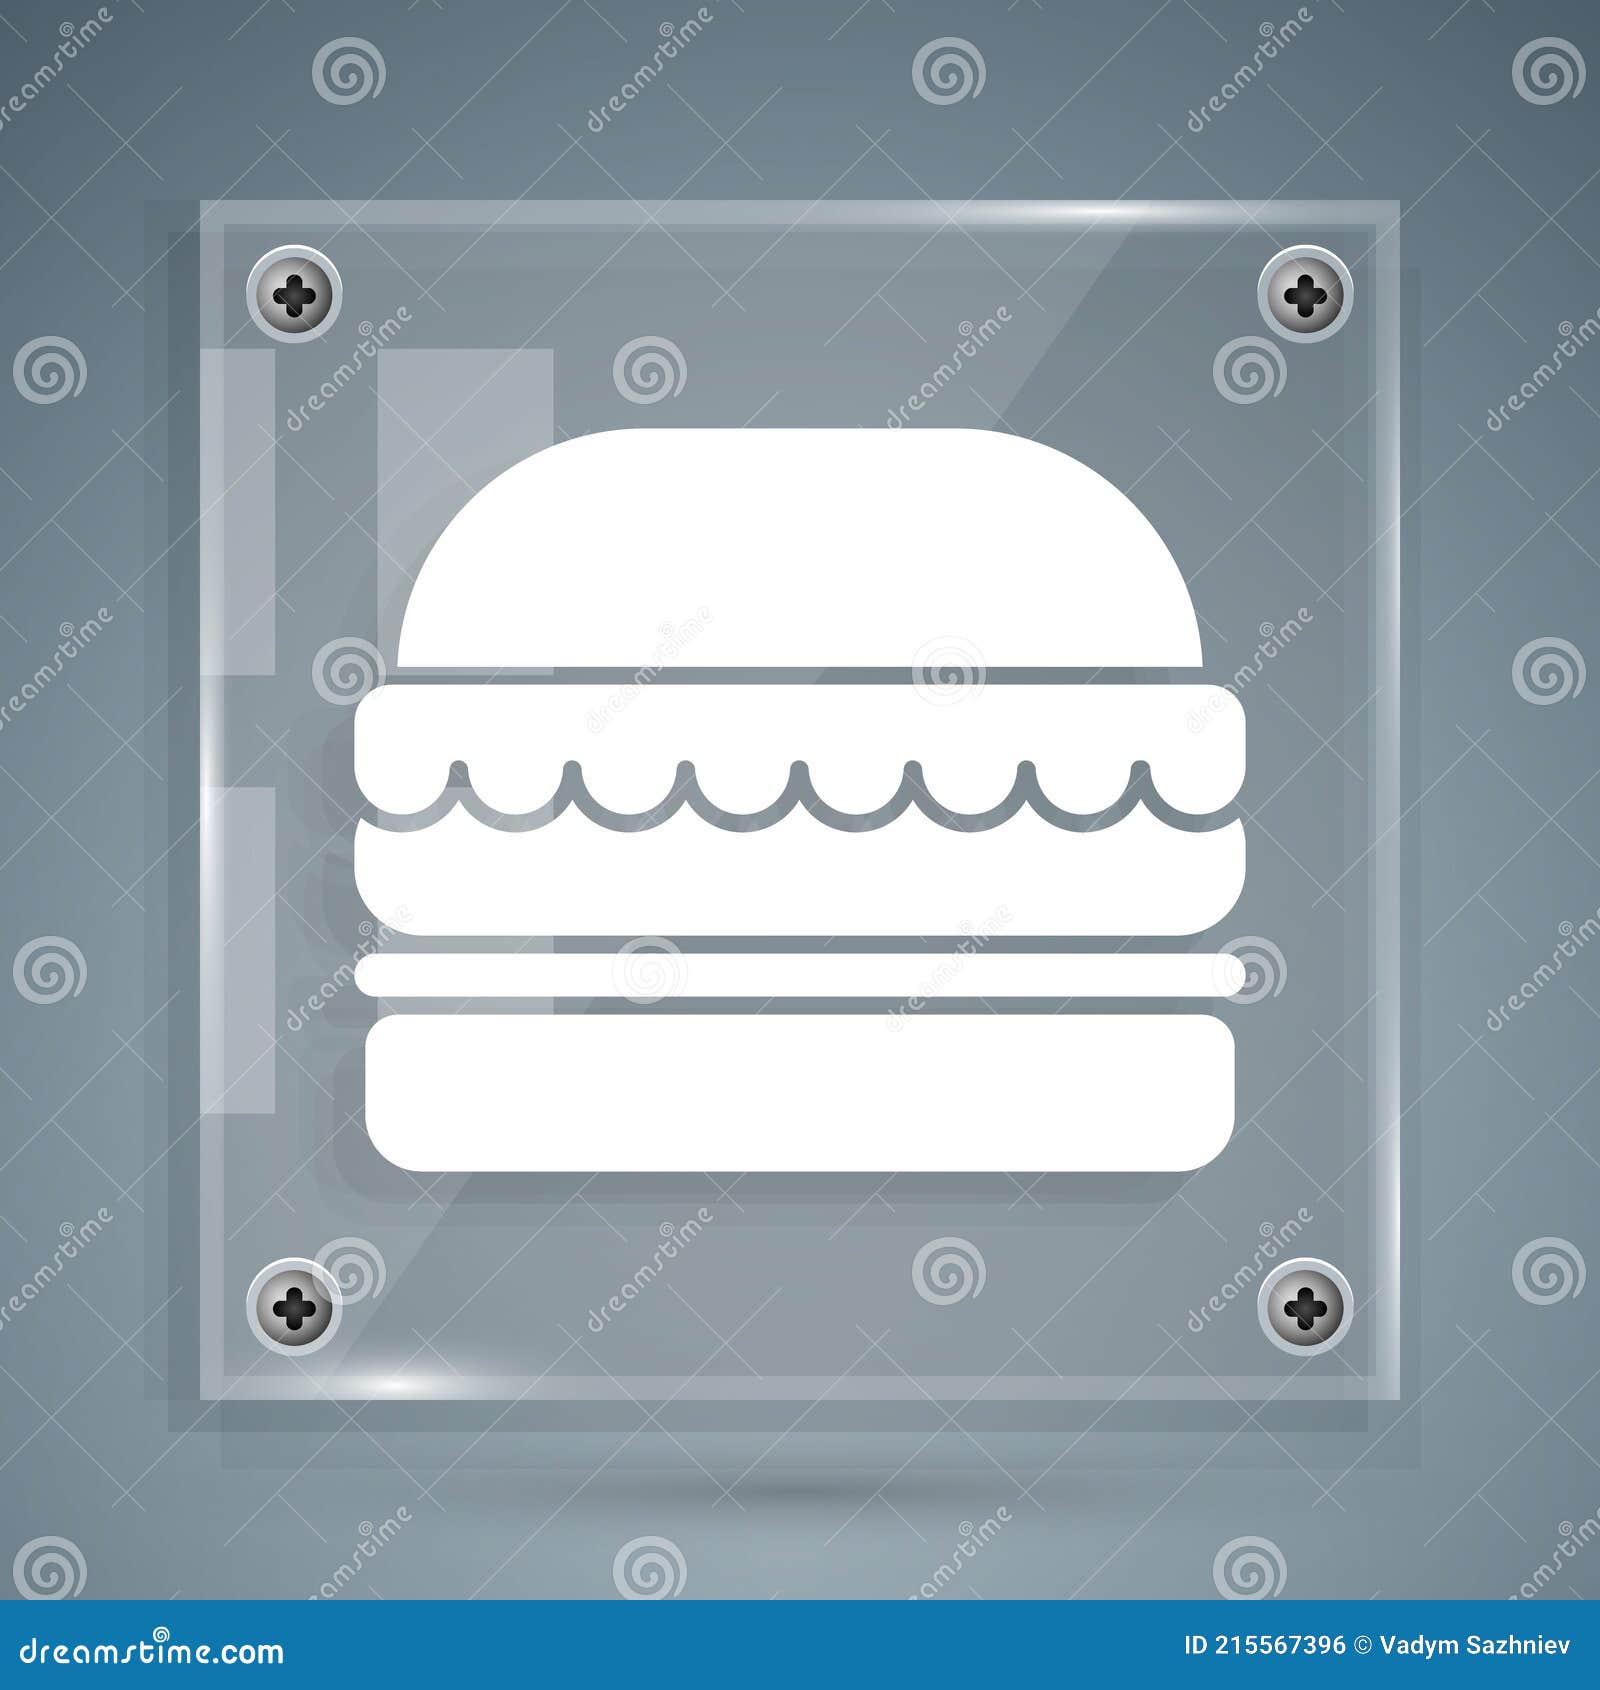 Biểu tượng burger trắng - một biểu tượng nổi tiếng của ẩm thực Mỹ đã rất quen thuộc với chúng ta. Nhưng bạn có bao giờ ngắm nhìn nó ở góc độ hoàn toàn mới mẻ? Nếu chưa hãy tìm hiểu ngay với hình ảnh liên quan đến biểu tượng burger trắng tại đây!